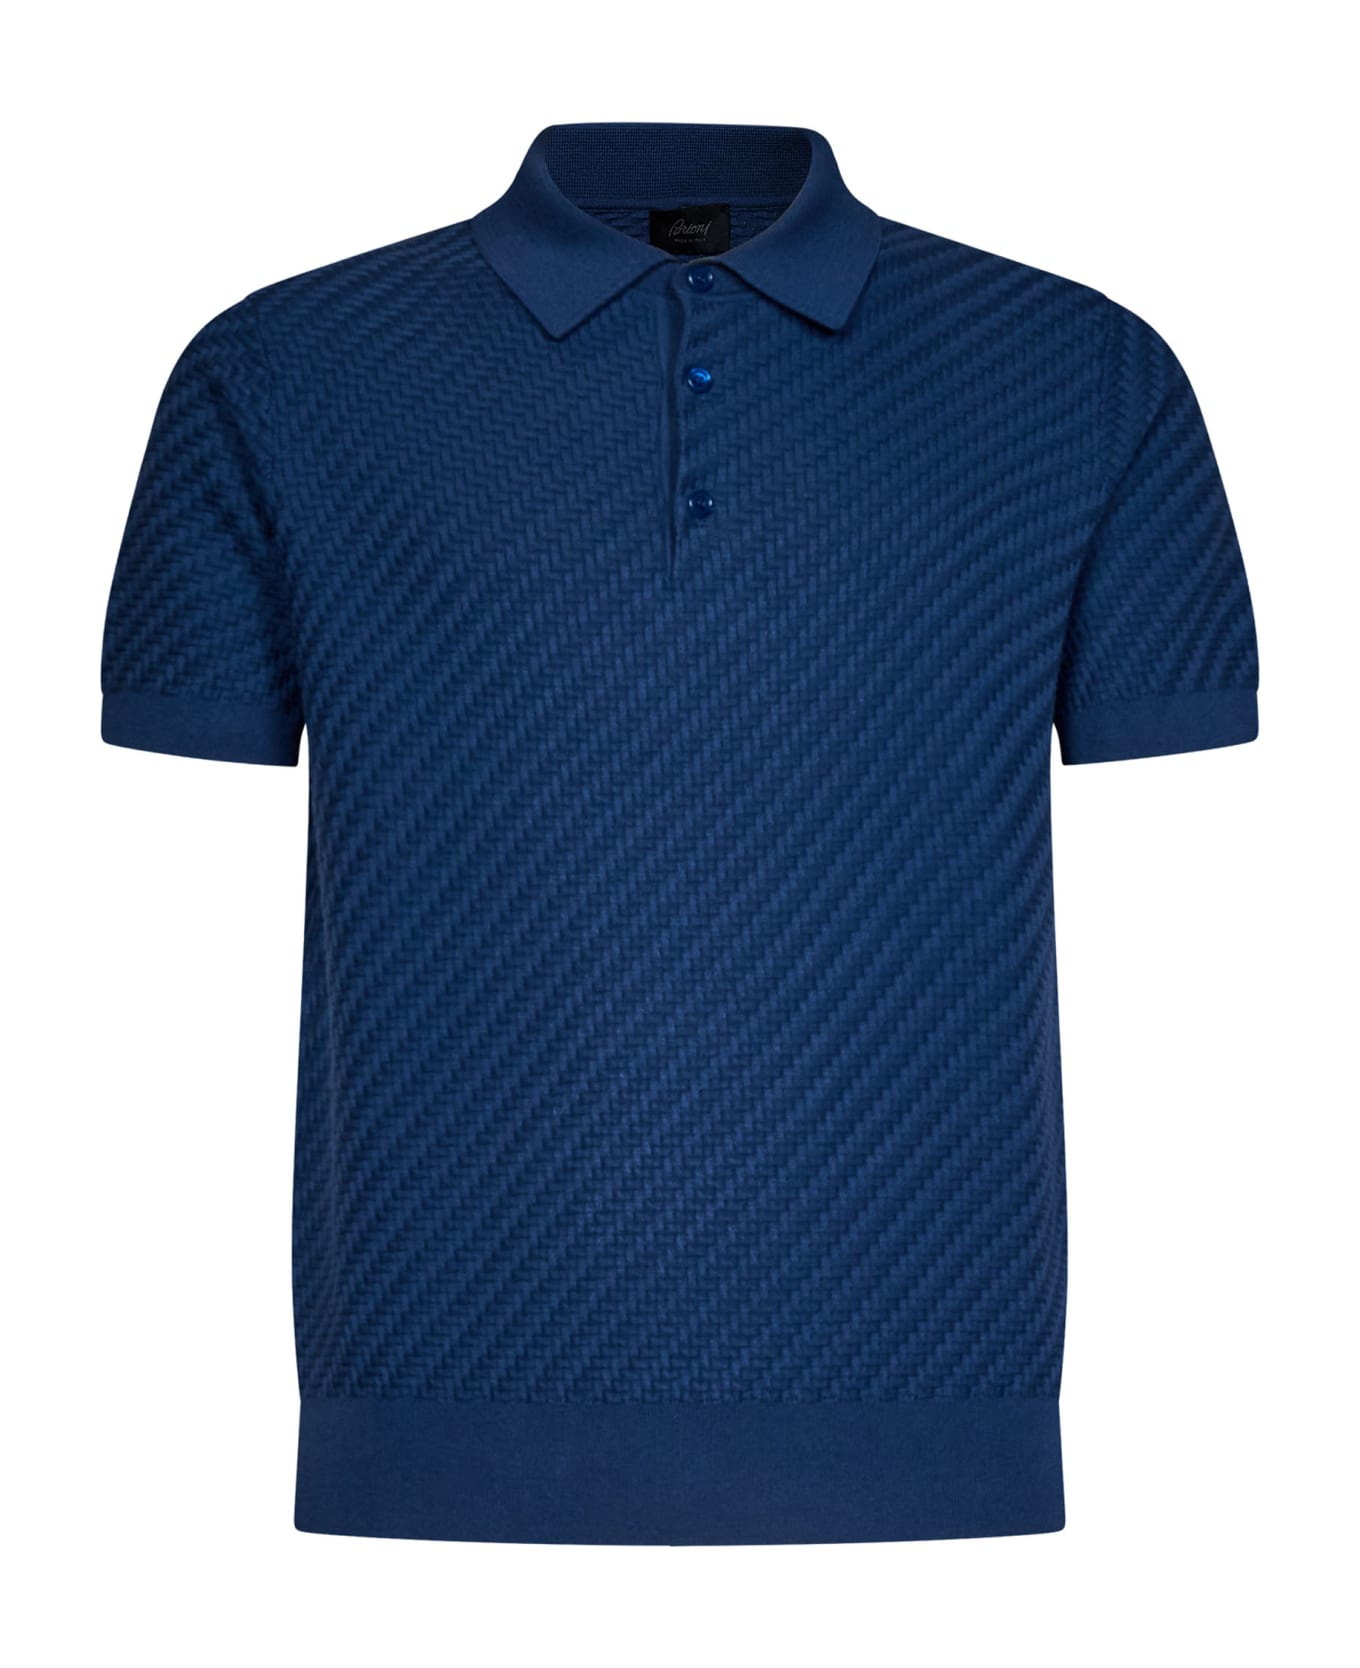 Brioni Polo Shirt - Bluette